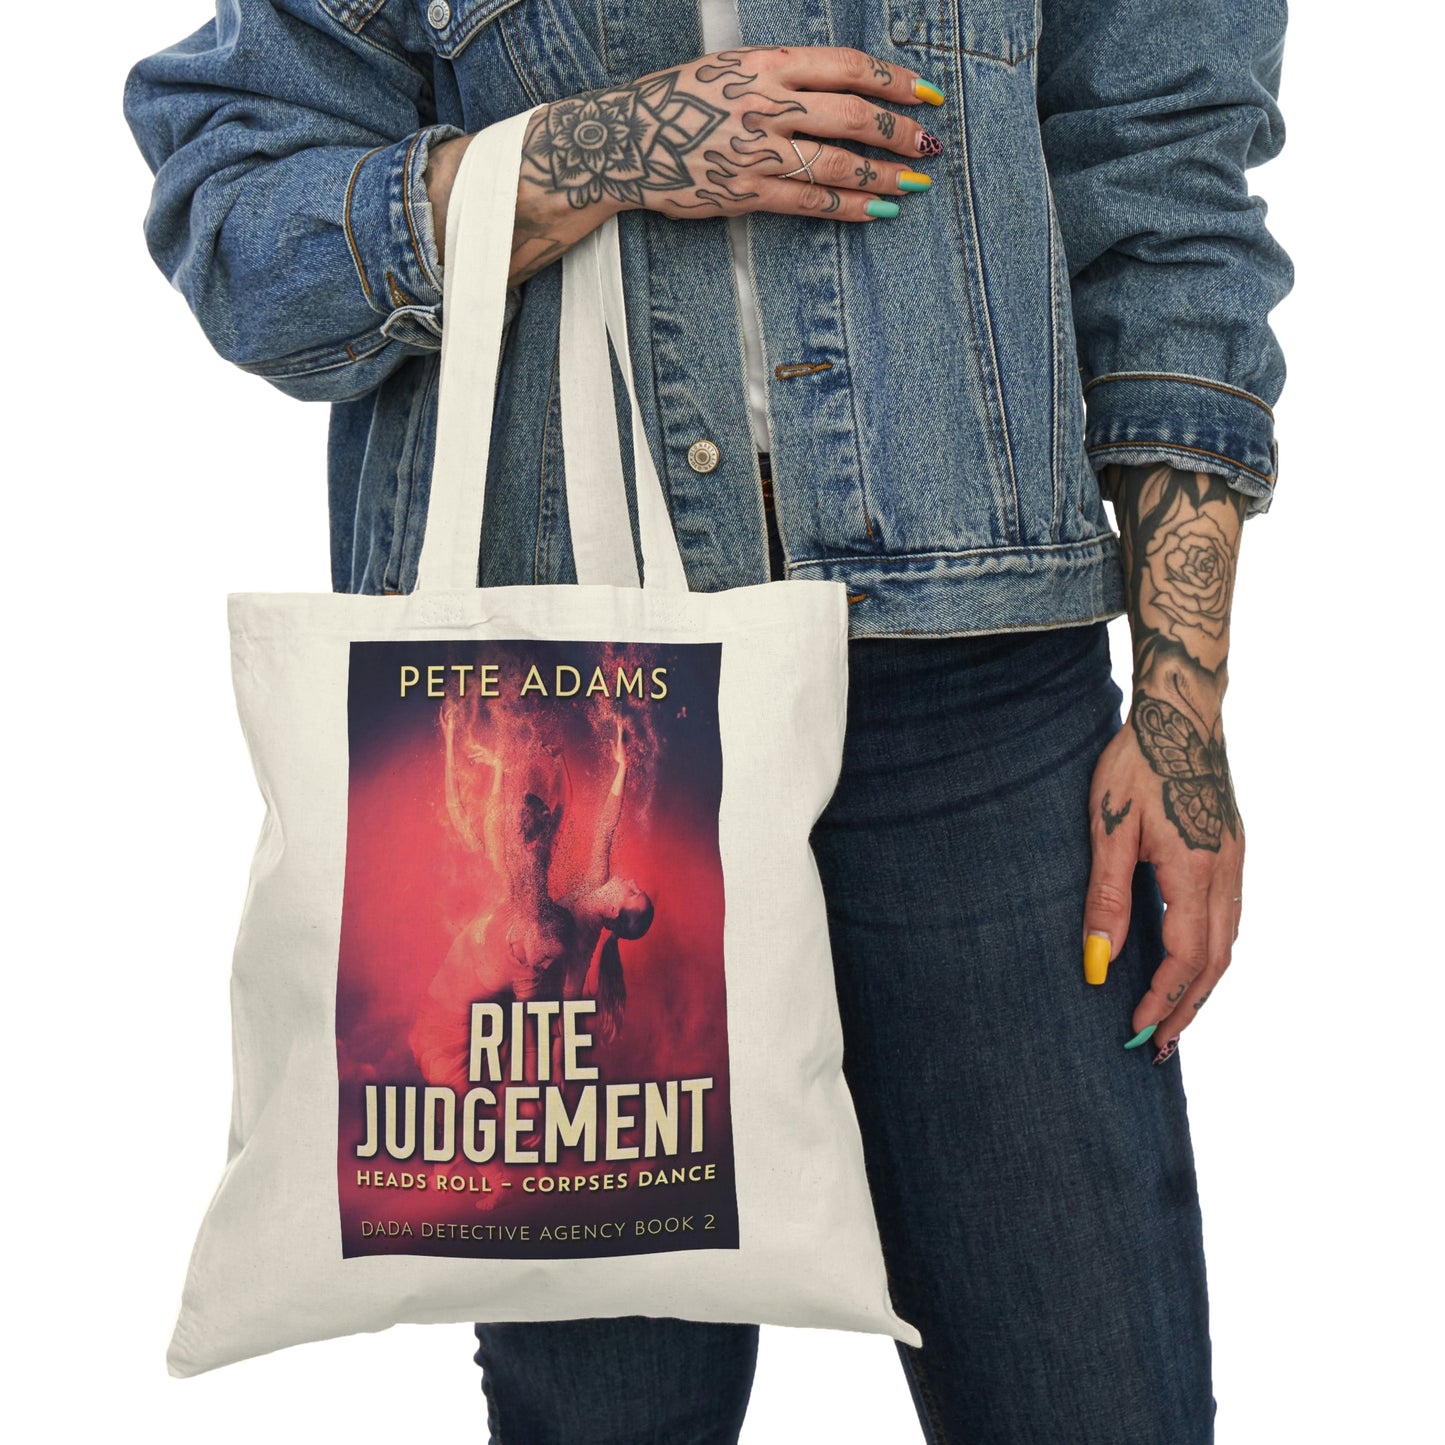 Rite Judgement - Natural Tote Bag